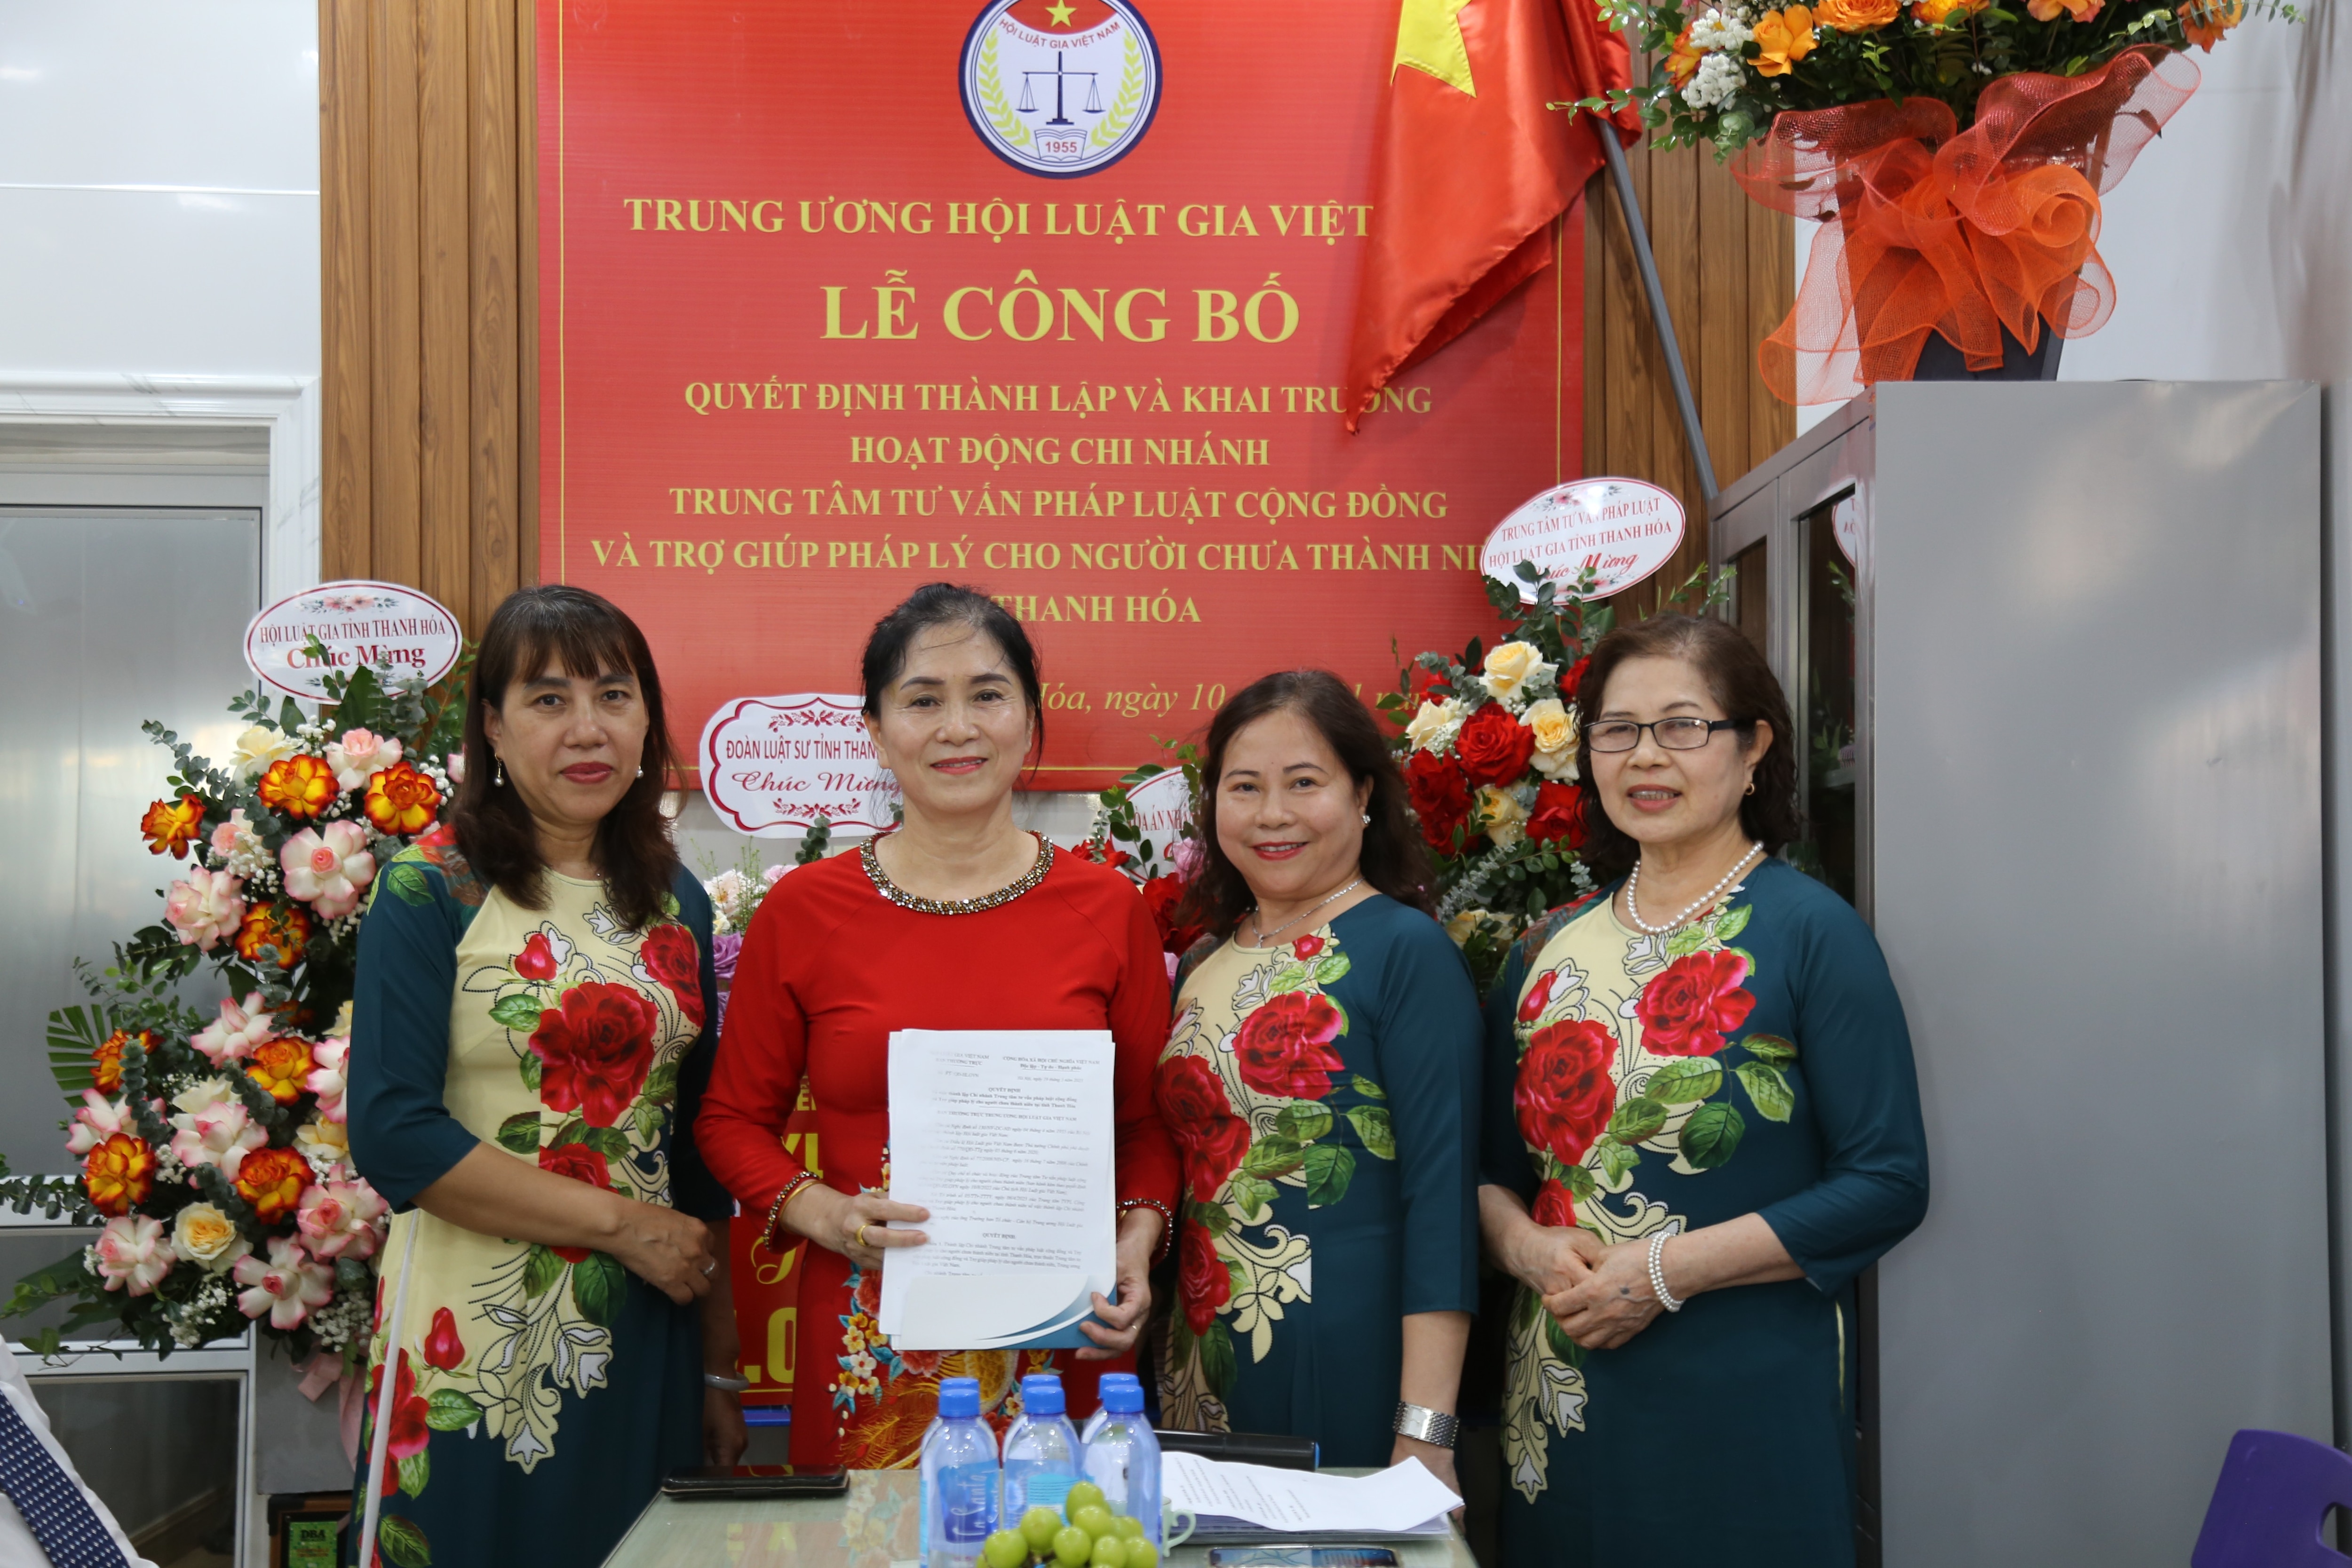 Sự kiện - Thành lập chi nhánh thứ 5 của Trung tâm Tư vấn pháp luật cho người chưa thành niên tại Thanh Hoá (Hình 8).